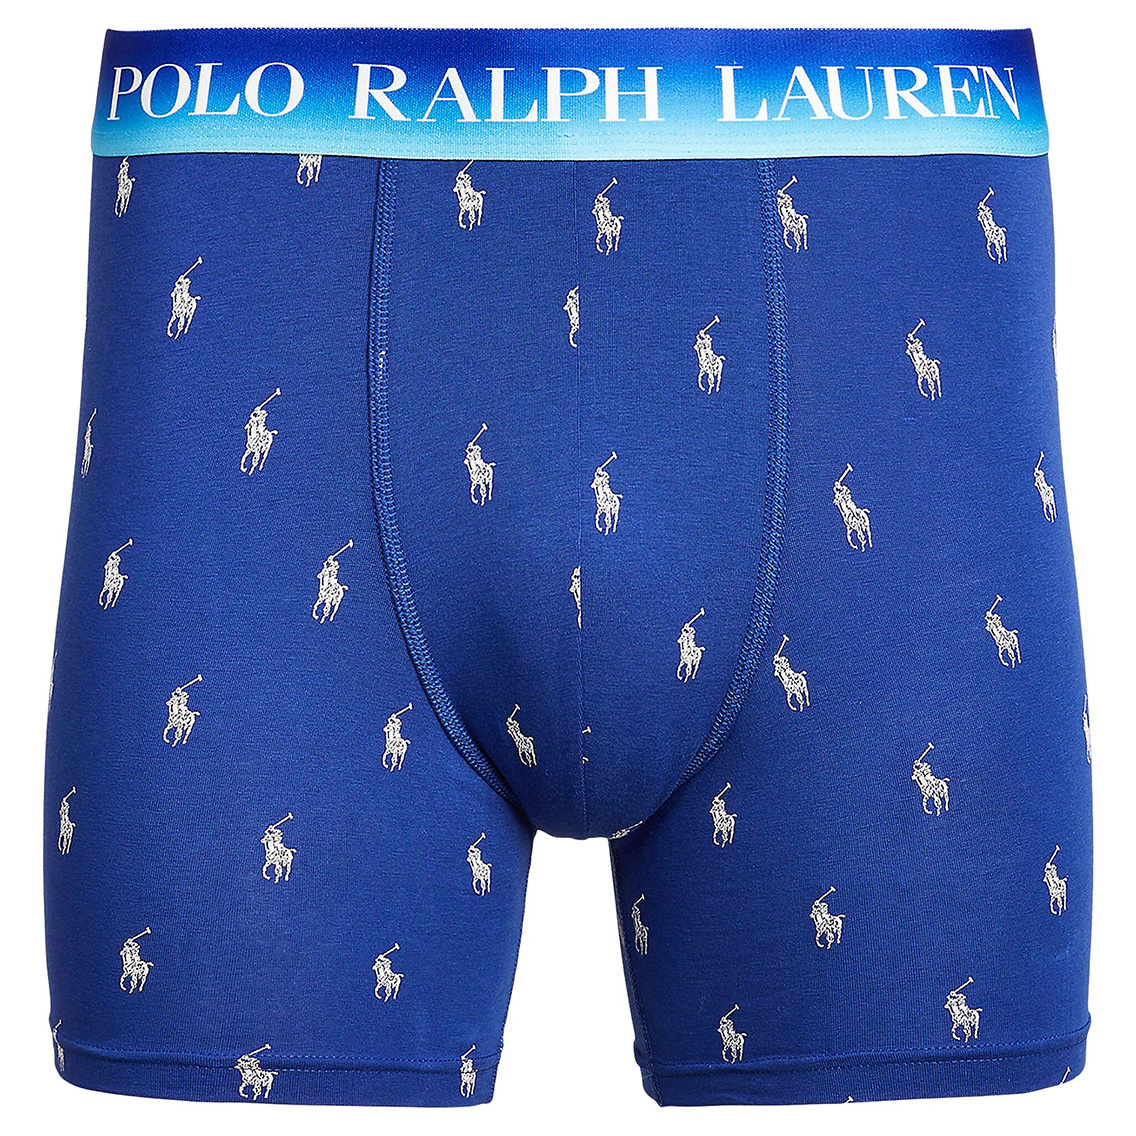 【ネコポス可:2点まで】[L999HR-A8YL] Polo Ralph Lauren ポロラルフローレン ボクサーパンツ メンズ アンダーウェア インナー 男性 下着